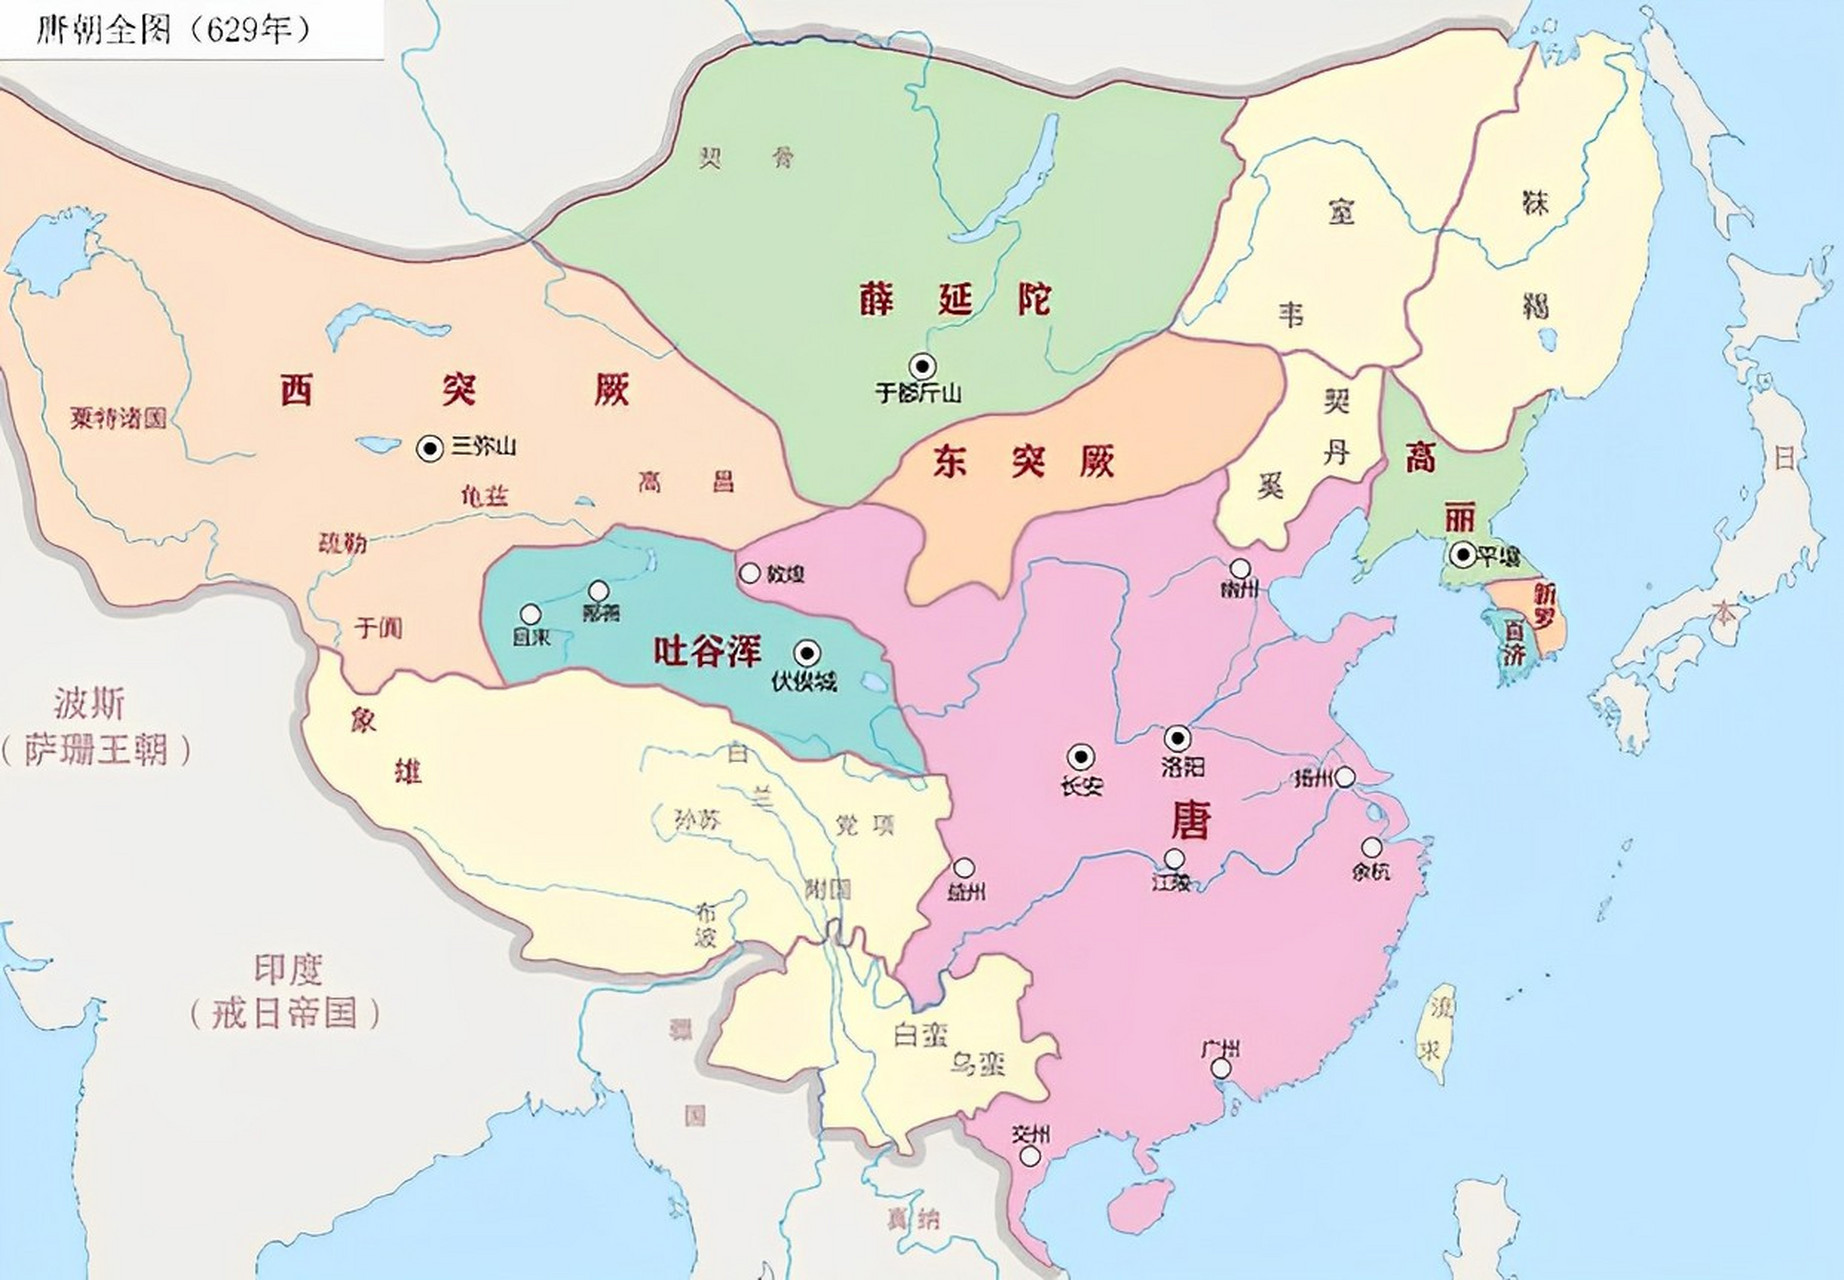 从公元629年到公元669年,唐朝的疆域从完全统一走向繁荣